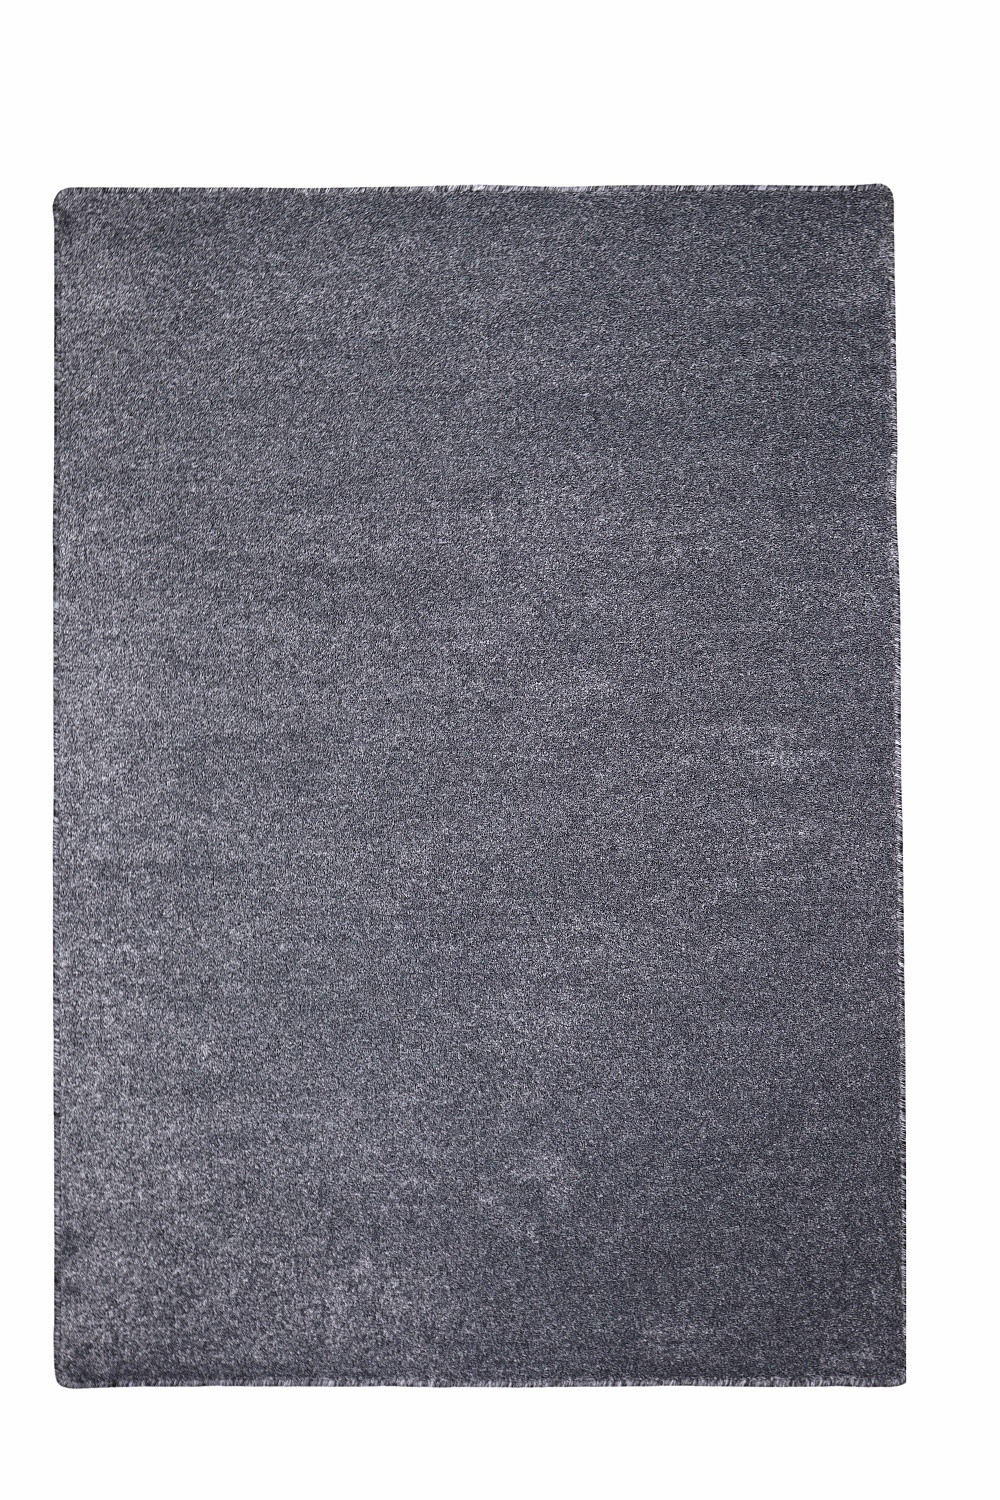 Levně Vopi koberce Kusový koberec Apollo Soft antra - 80x150 cm